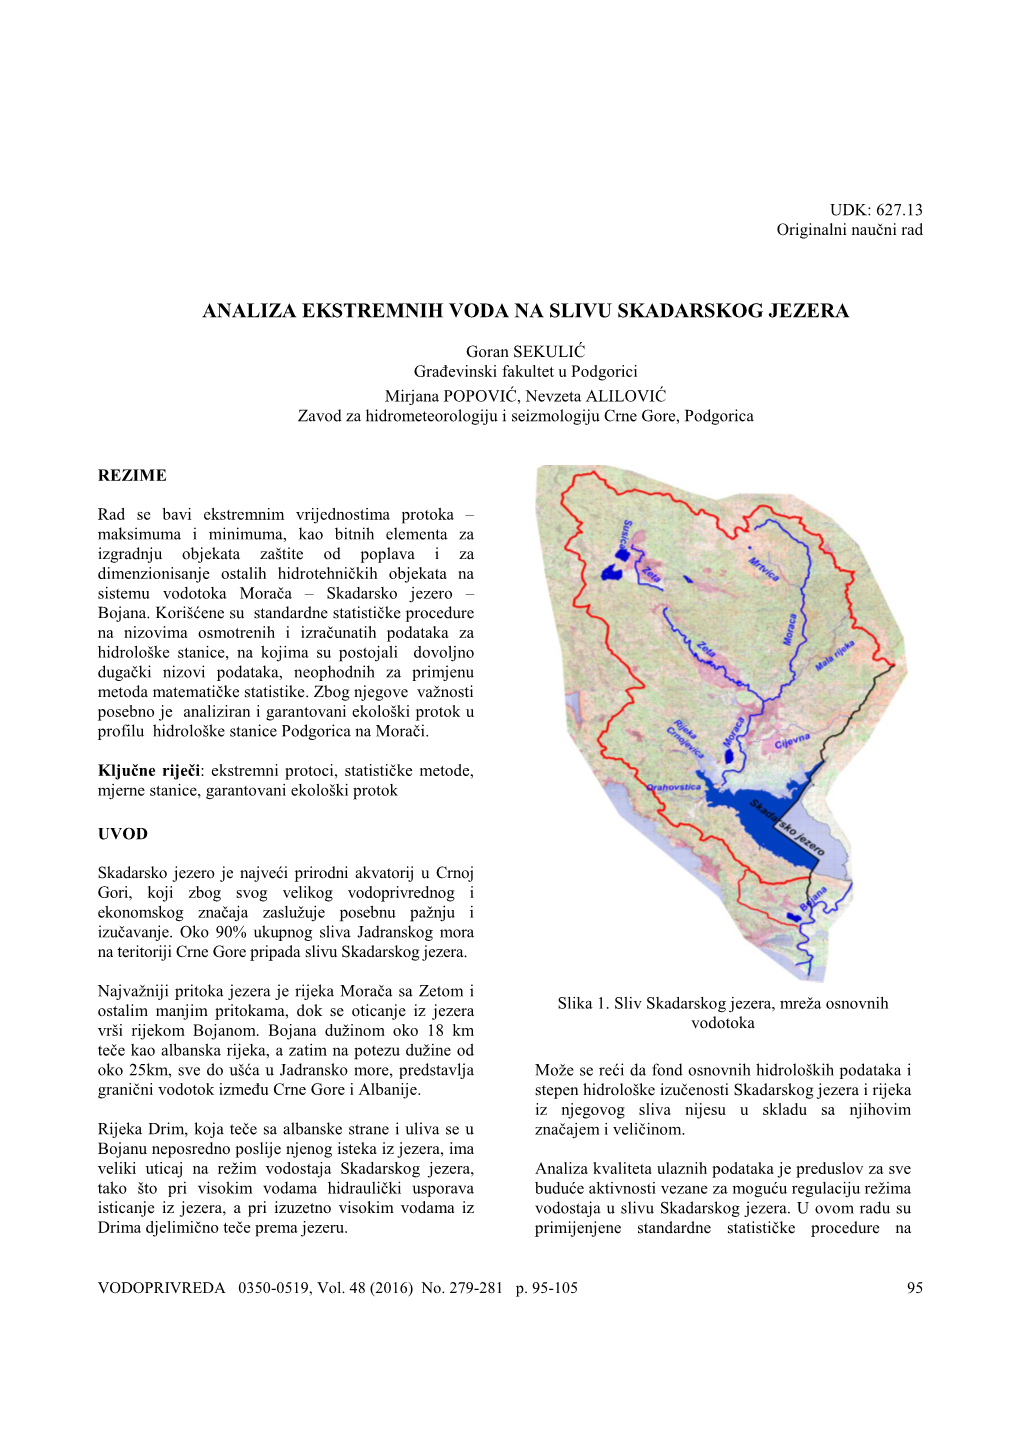 Analiza Ekstremnih Voda Na Slivu Skadarskog Jezera